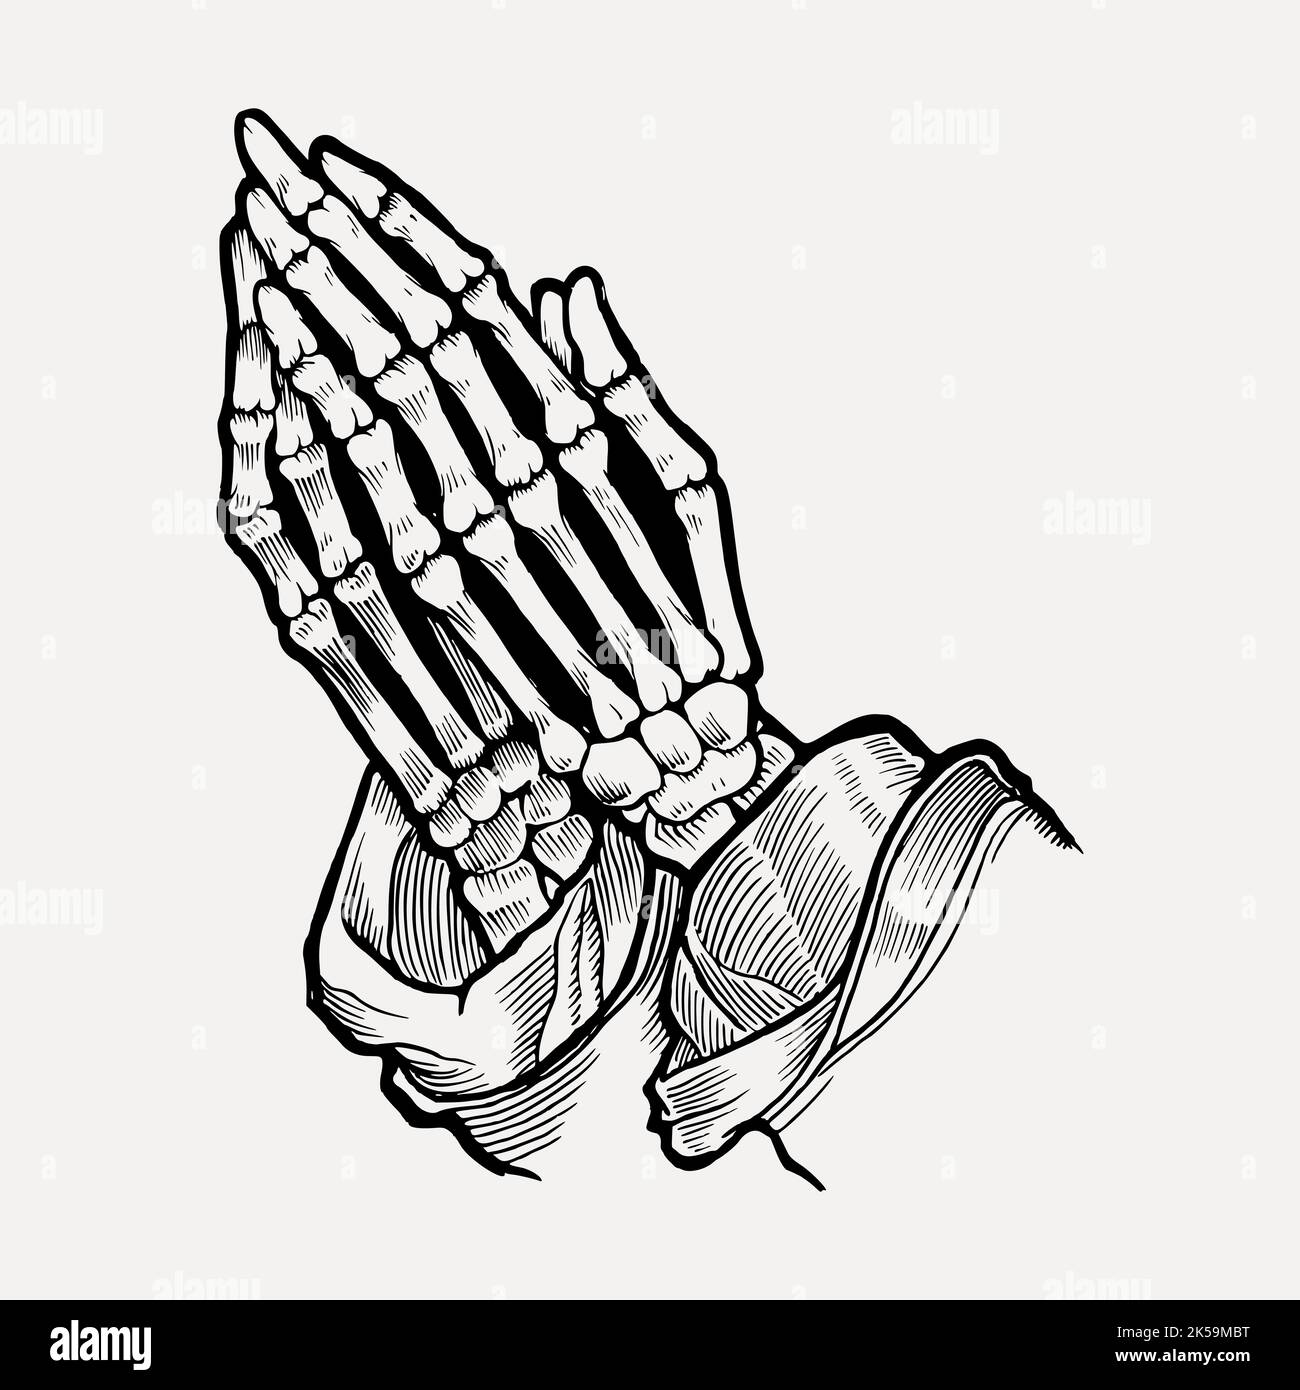 https://c8.alamy.com/comp/2K59MBT/praying-skeleton-hands-clipart-vintage-hand-drawn-vector-2K59MBT.jpg